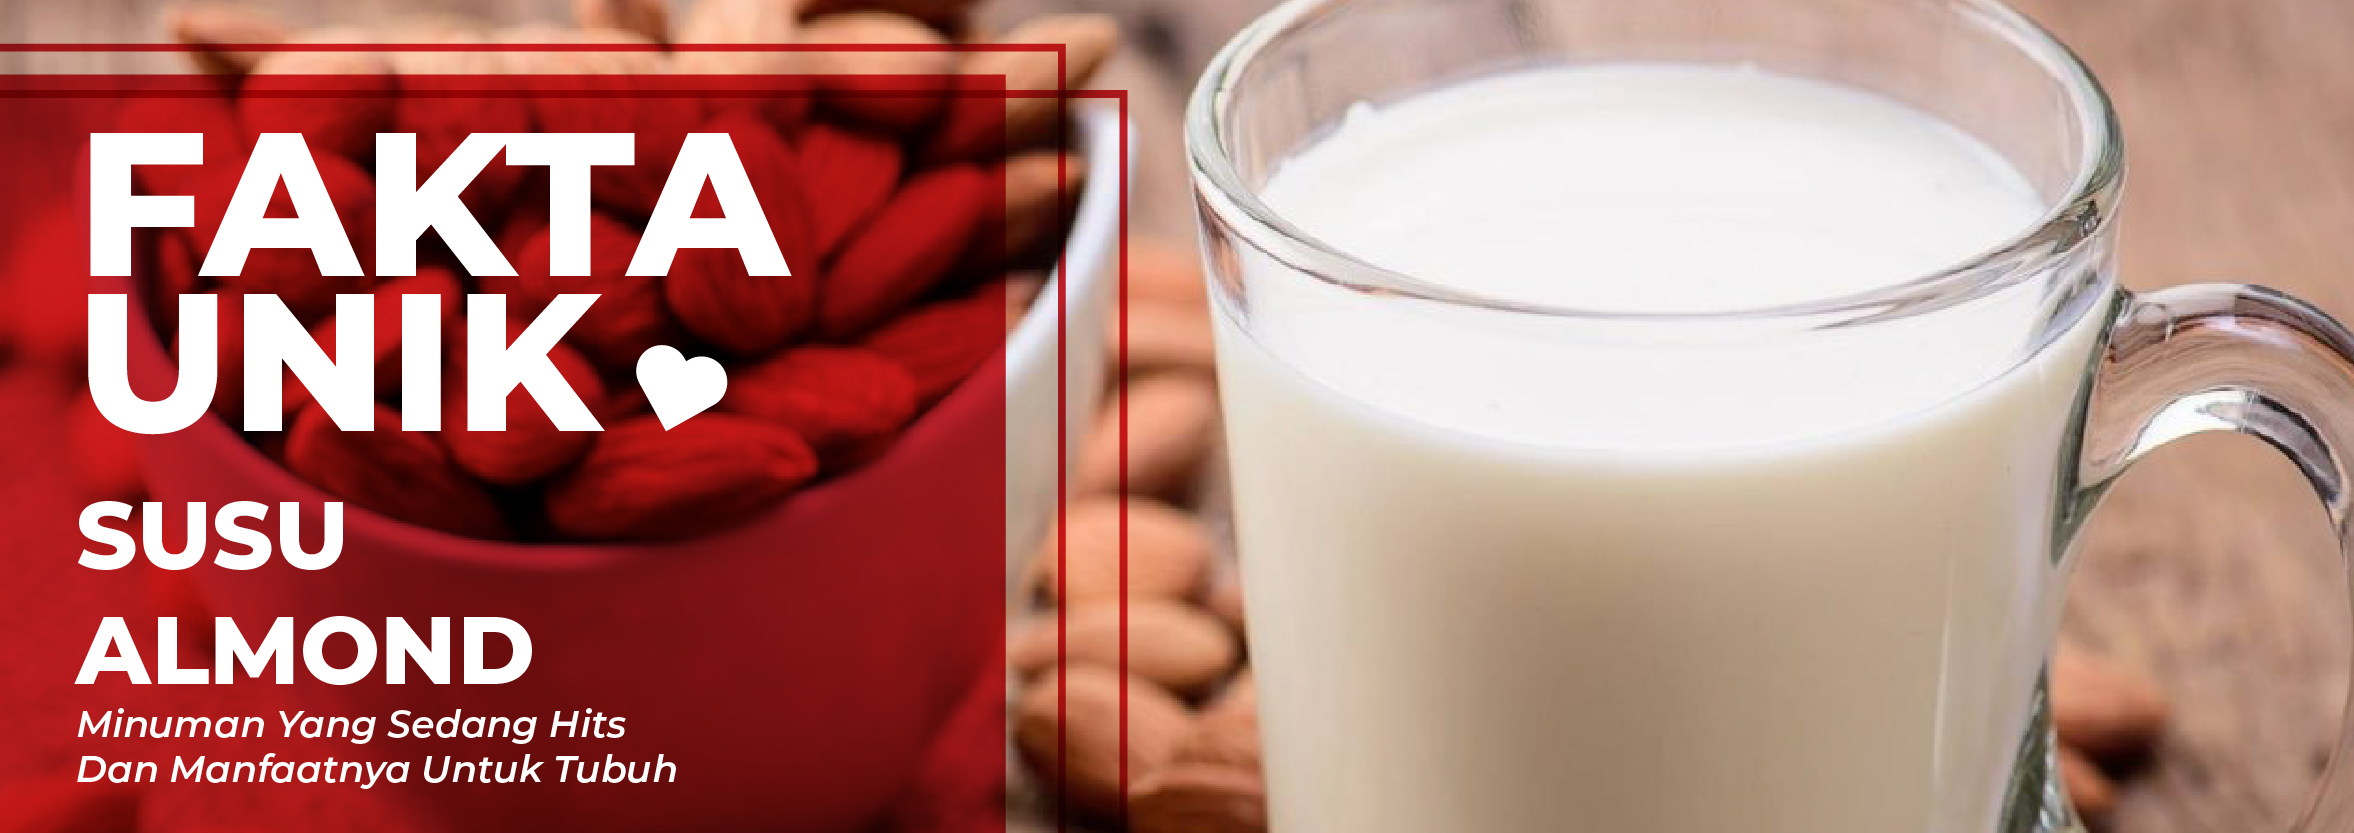 Fakta Unik: Susu Almond, Minuman Yang Sedang Hits Dan Manfaatnya Untuk Tubuh